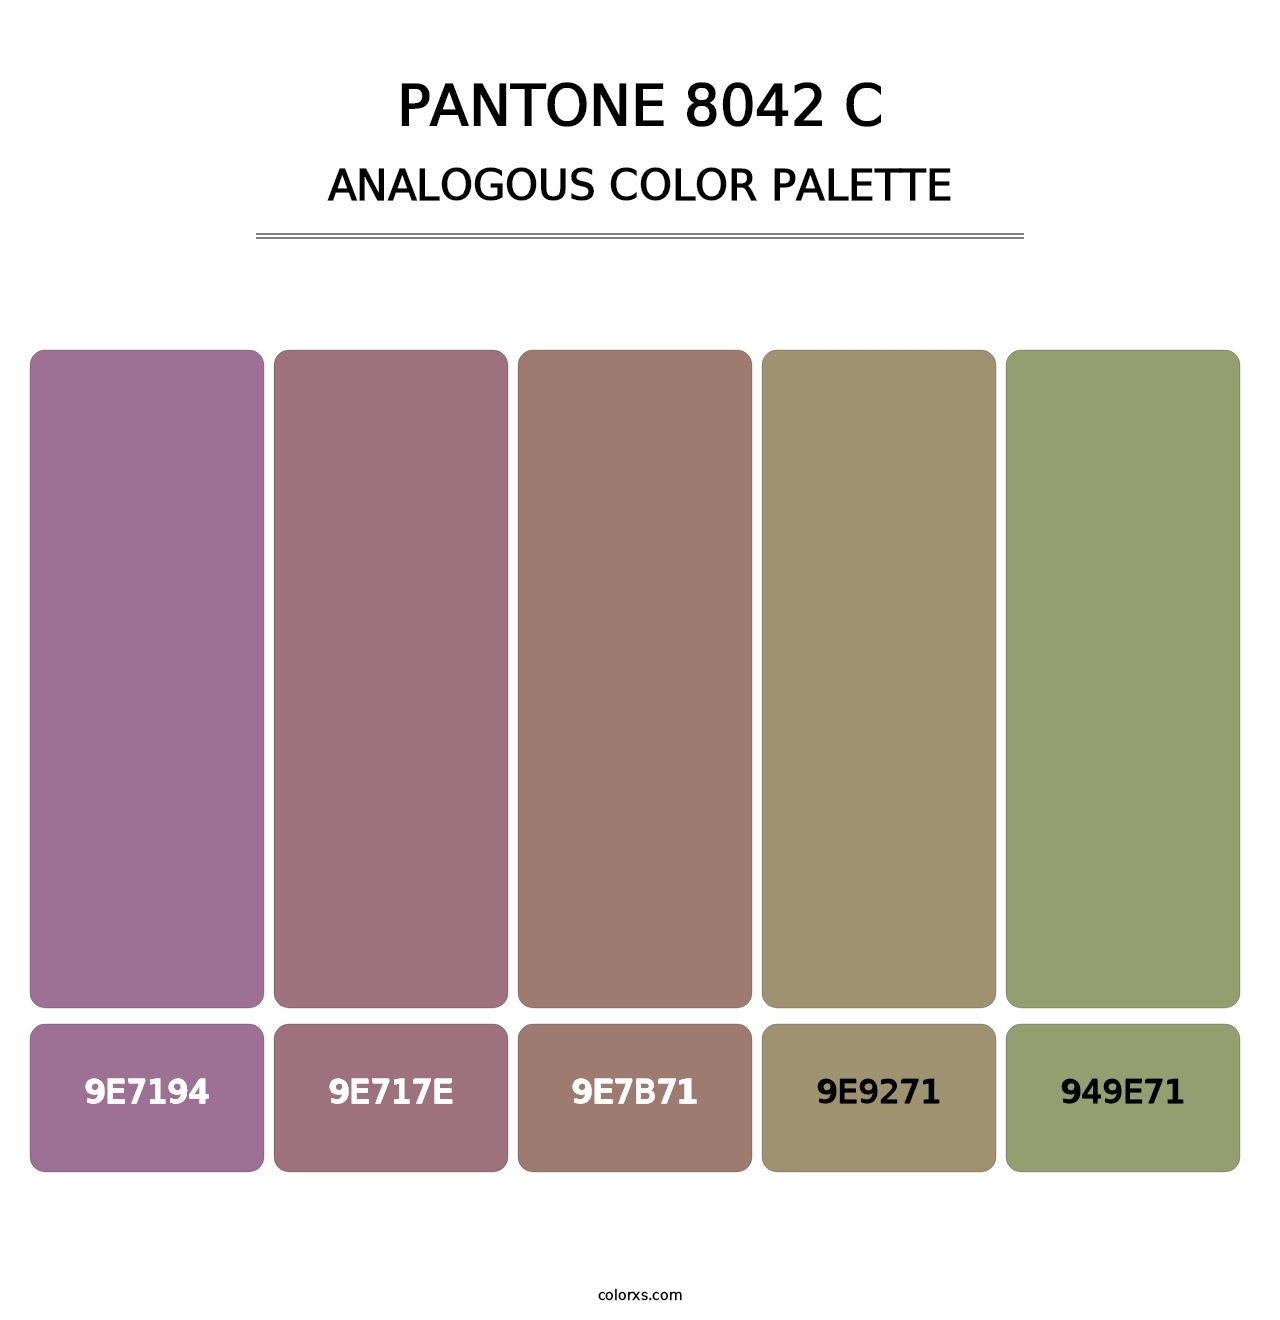 PANTONE 8042 C - Analogous Color Palette